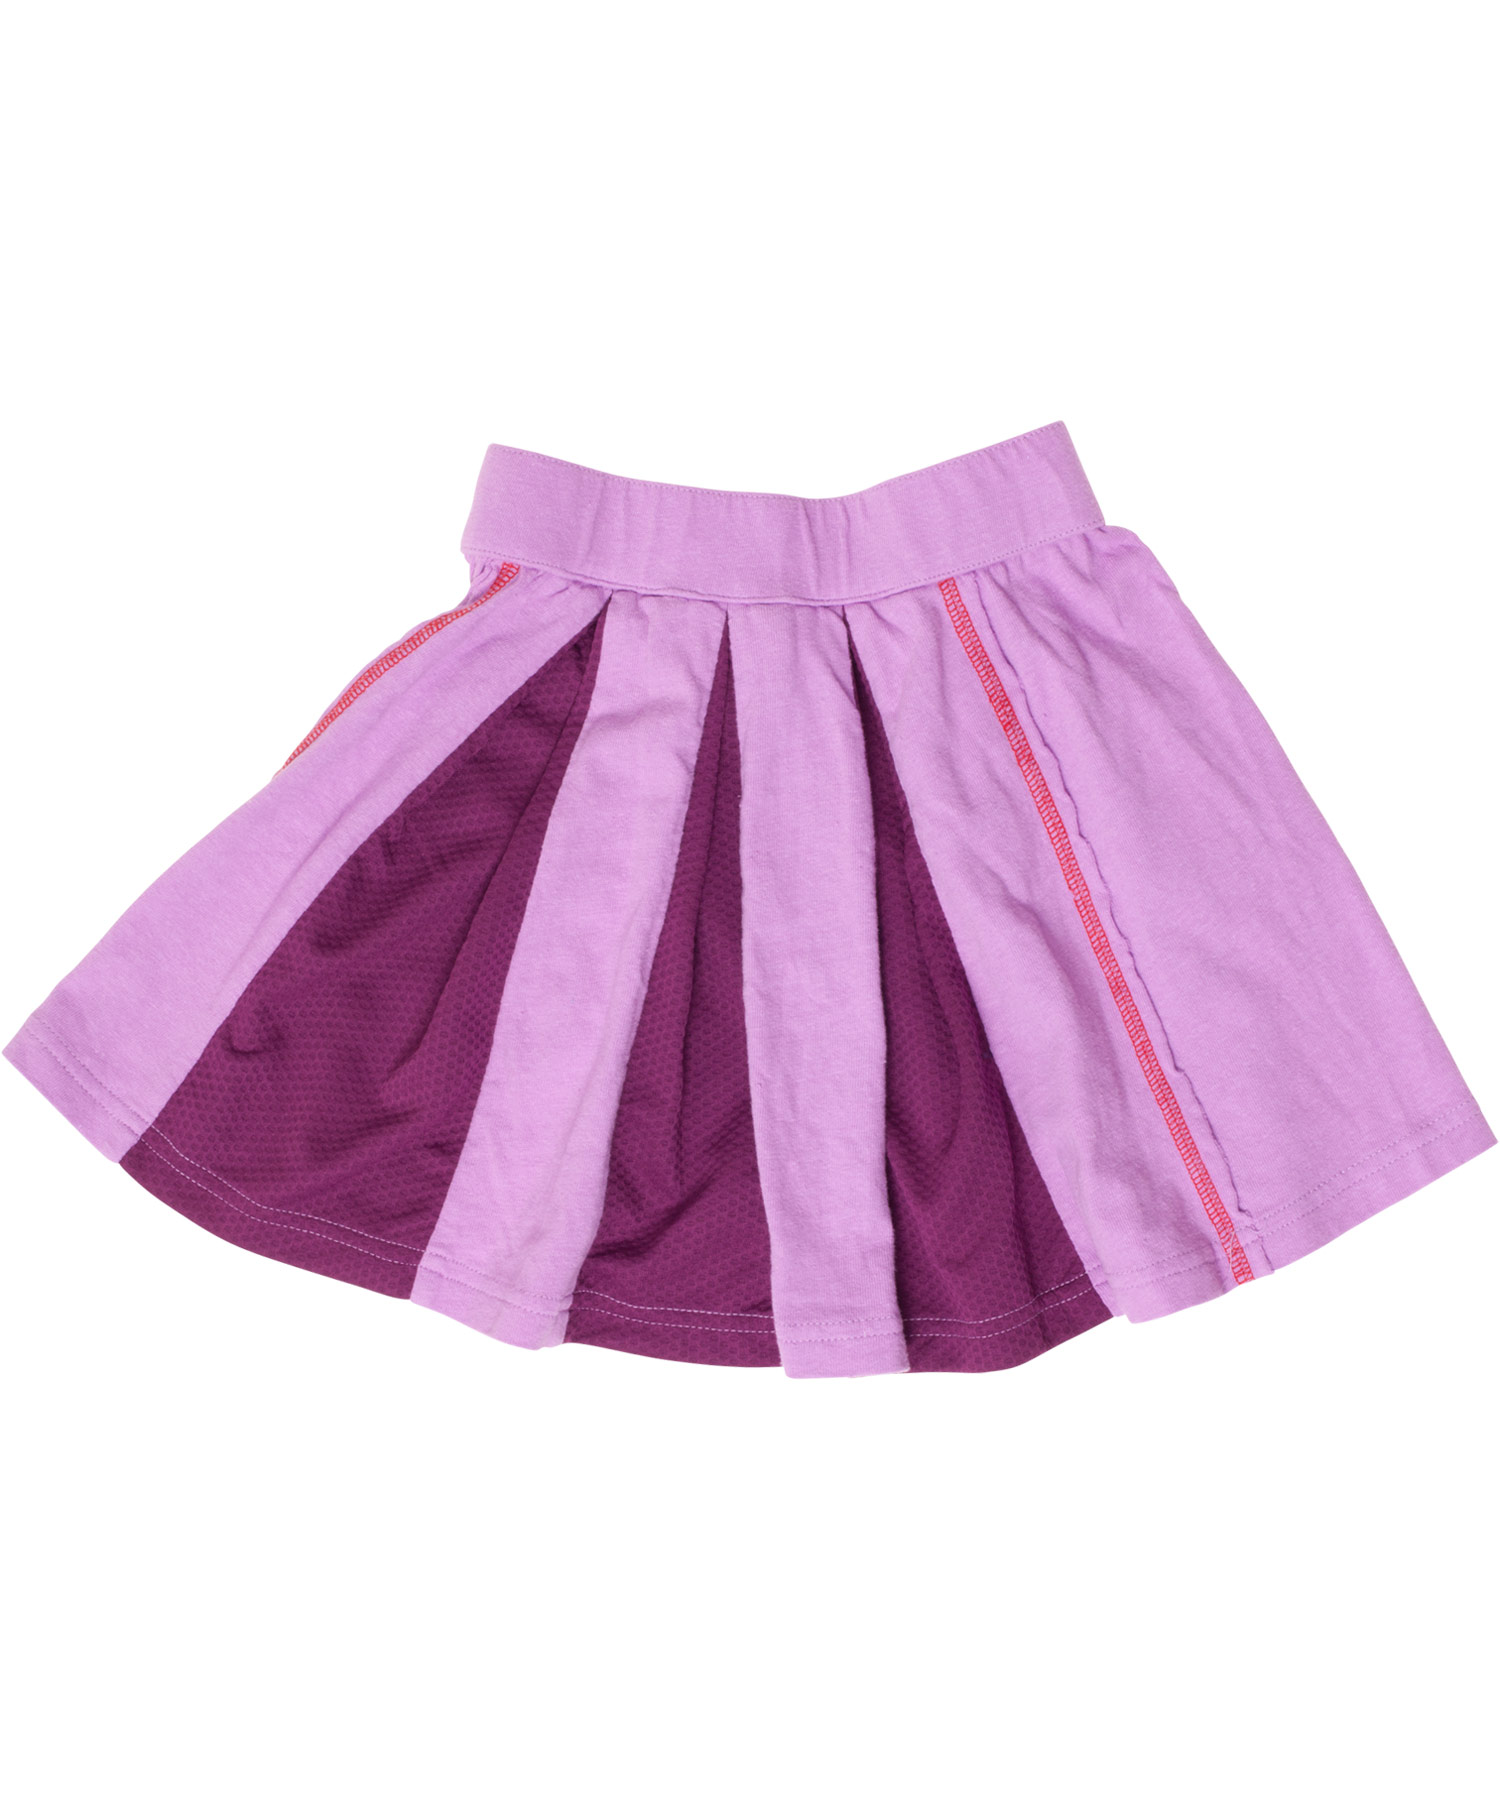 Bargain! Katvig recycled organic sporty skirt (Sports skirt)